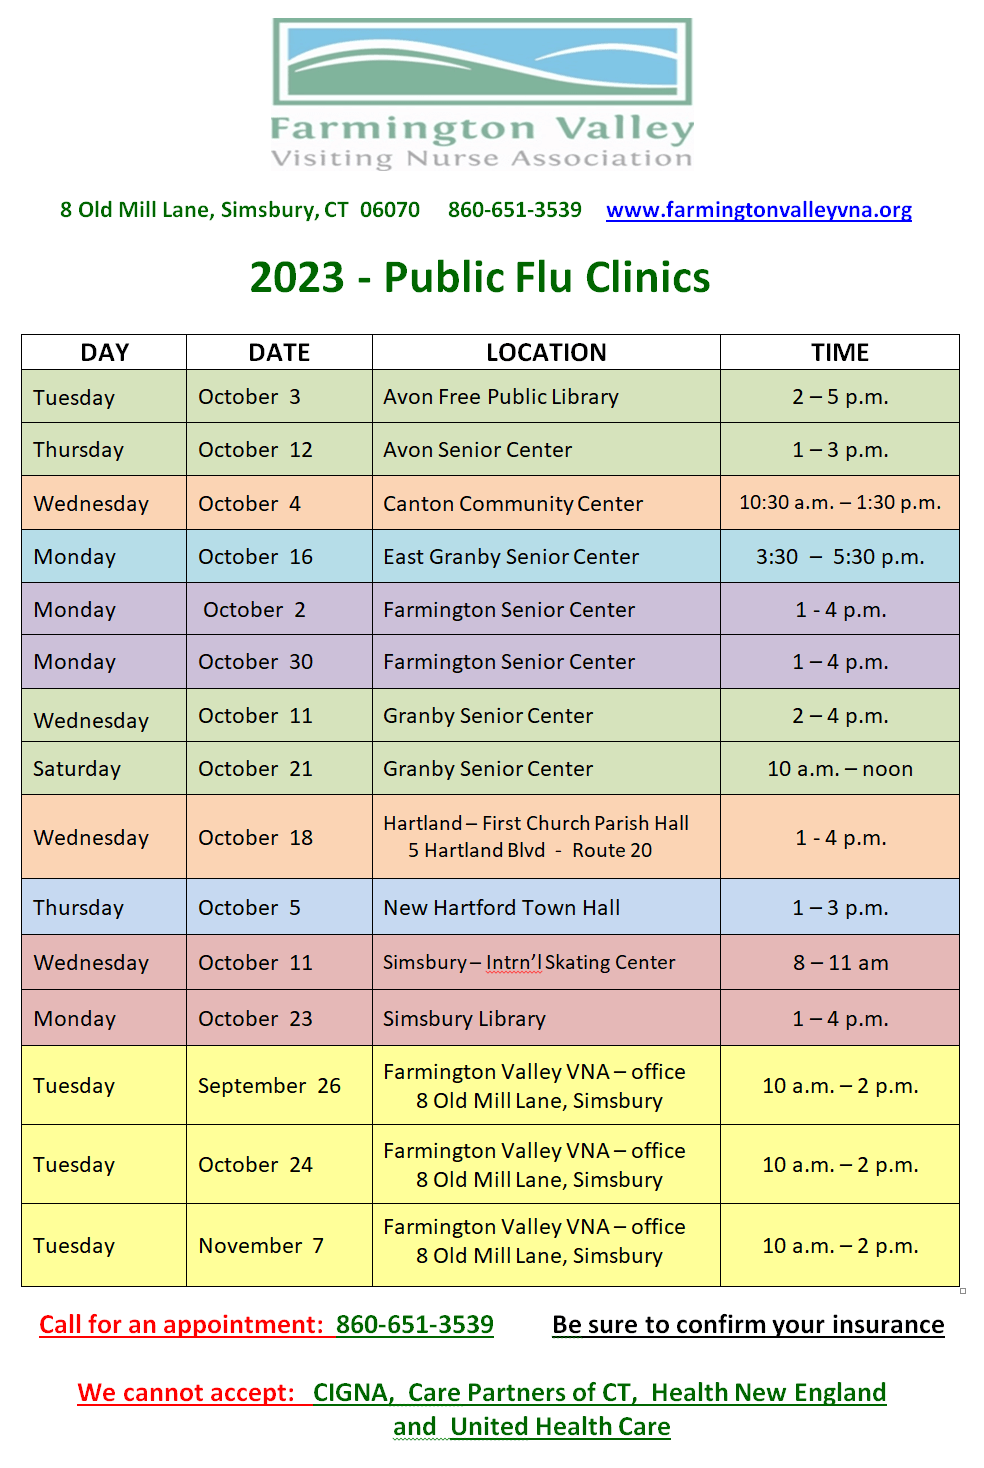 2023 Public Flu Clinics Schedule